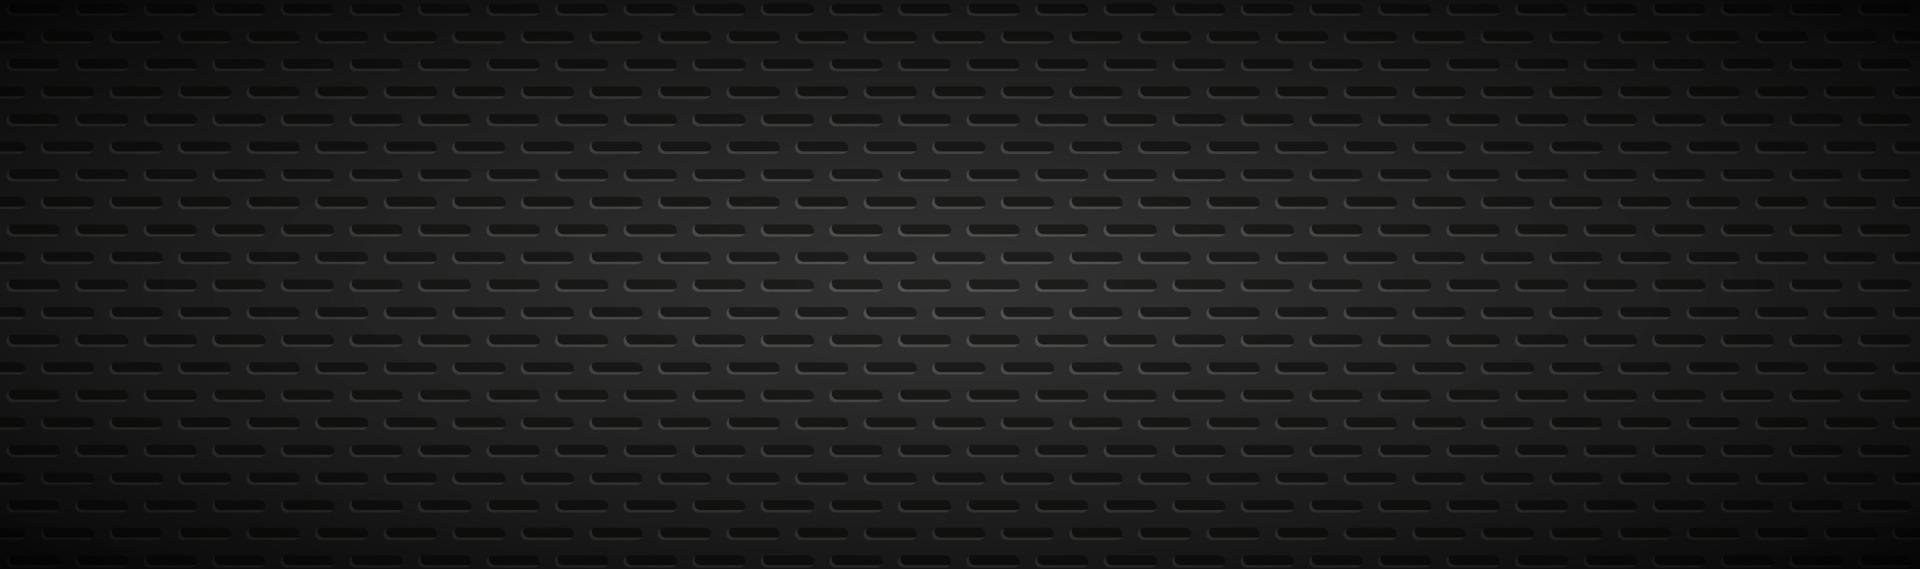 geometriska polygoner rubrik abstrakt svart metalliskt rostfritt stål banner vektor illustration bakgrund